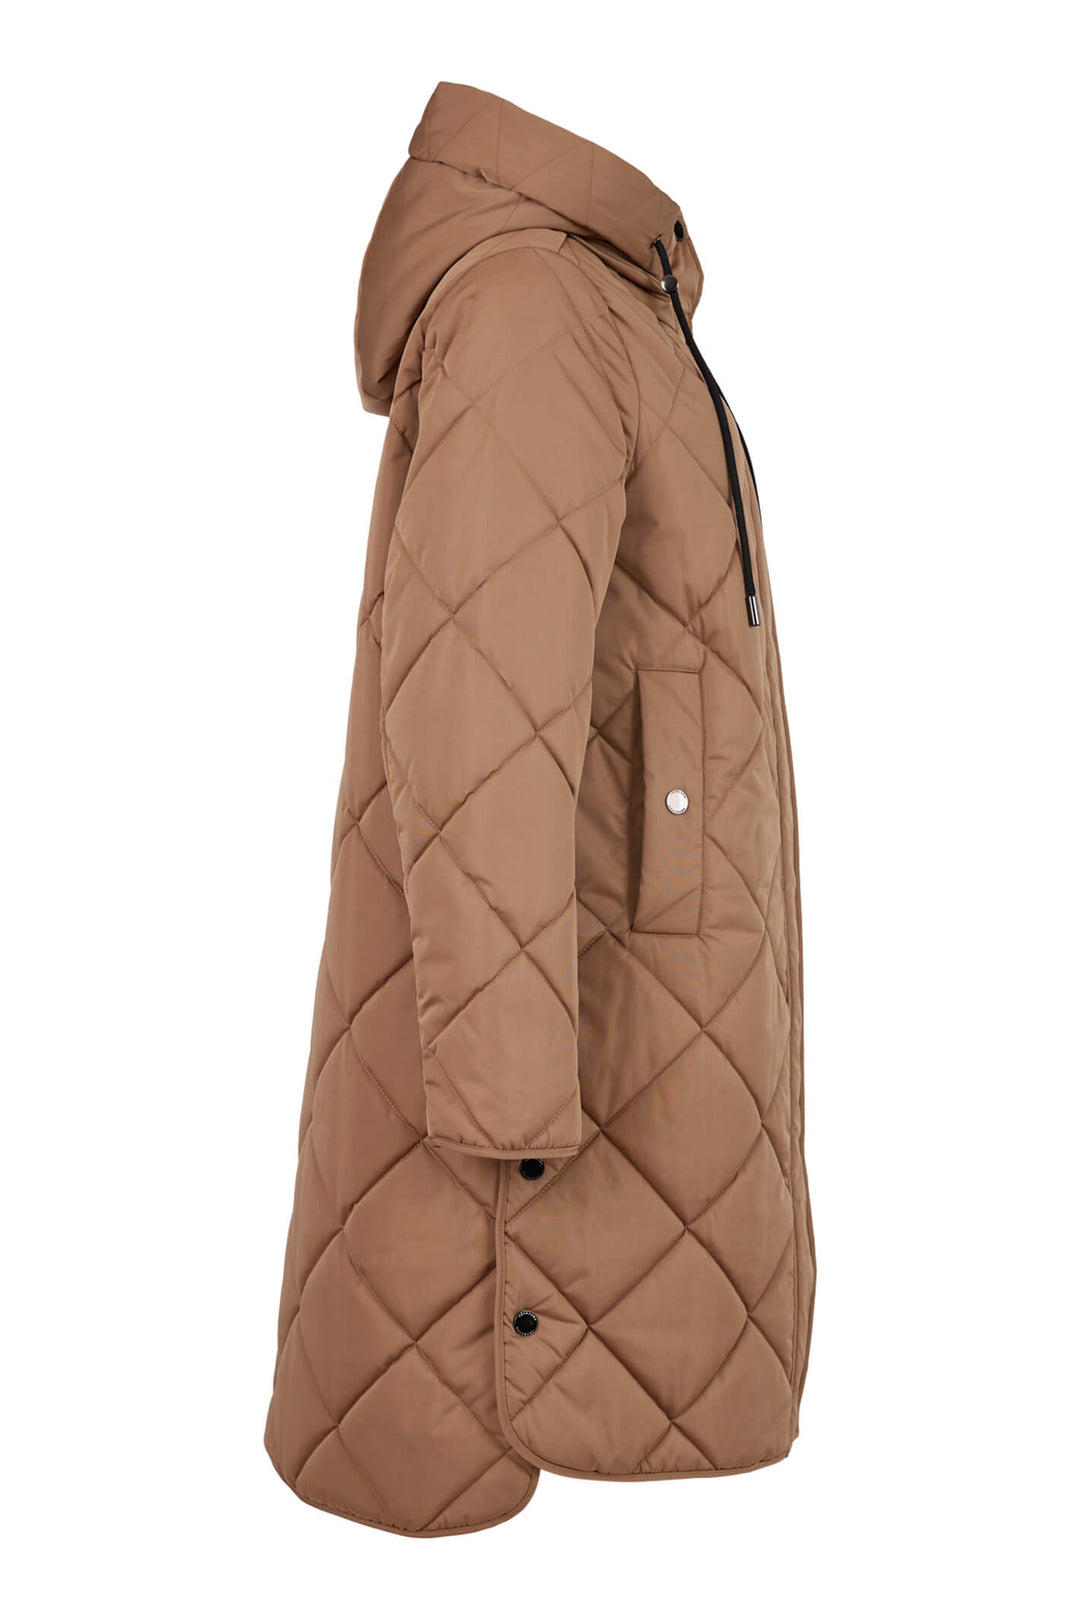 Frandsen 713-357-16 Light Brown Diamond Padded Hooded Coat - Olivia Grace Fashion